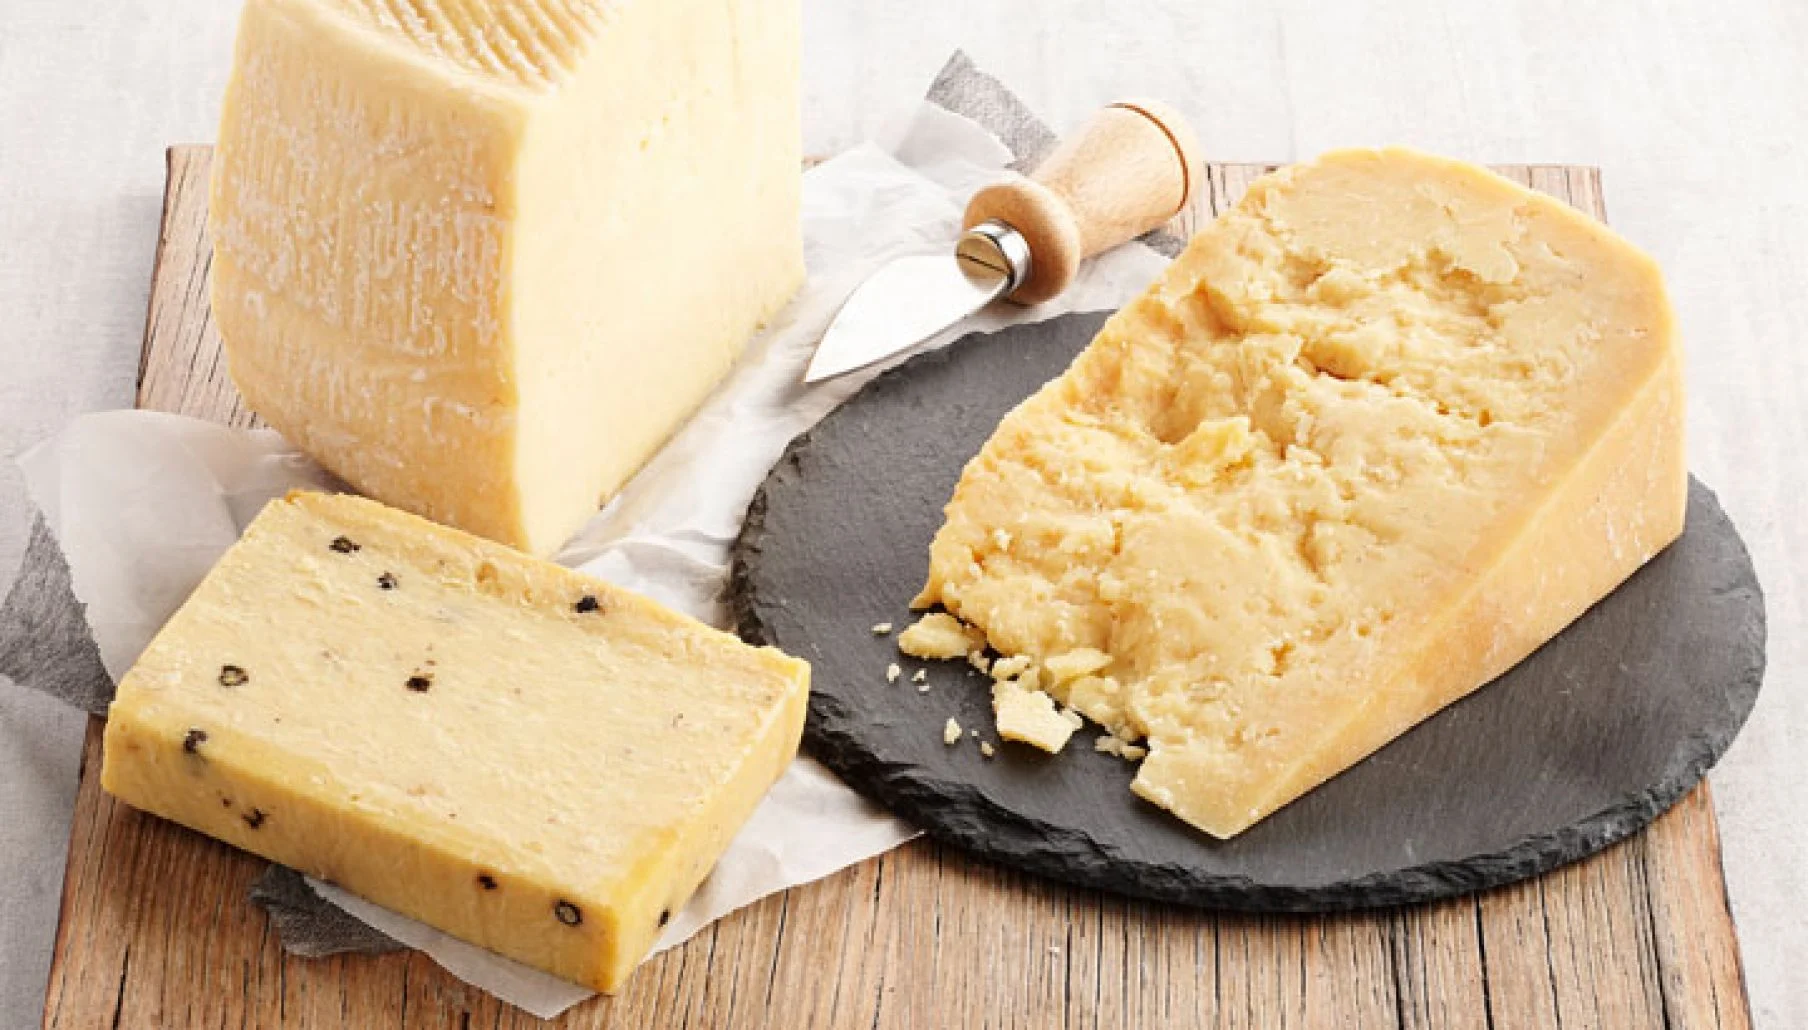 أسرار طريقة عمل الجبنة الرومي في البيت بمكونات سهله وبسيطة